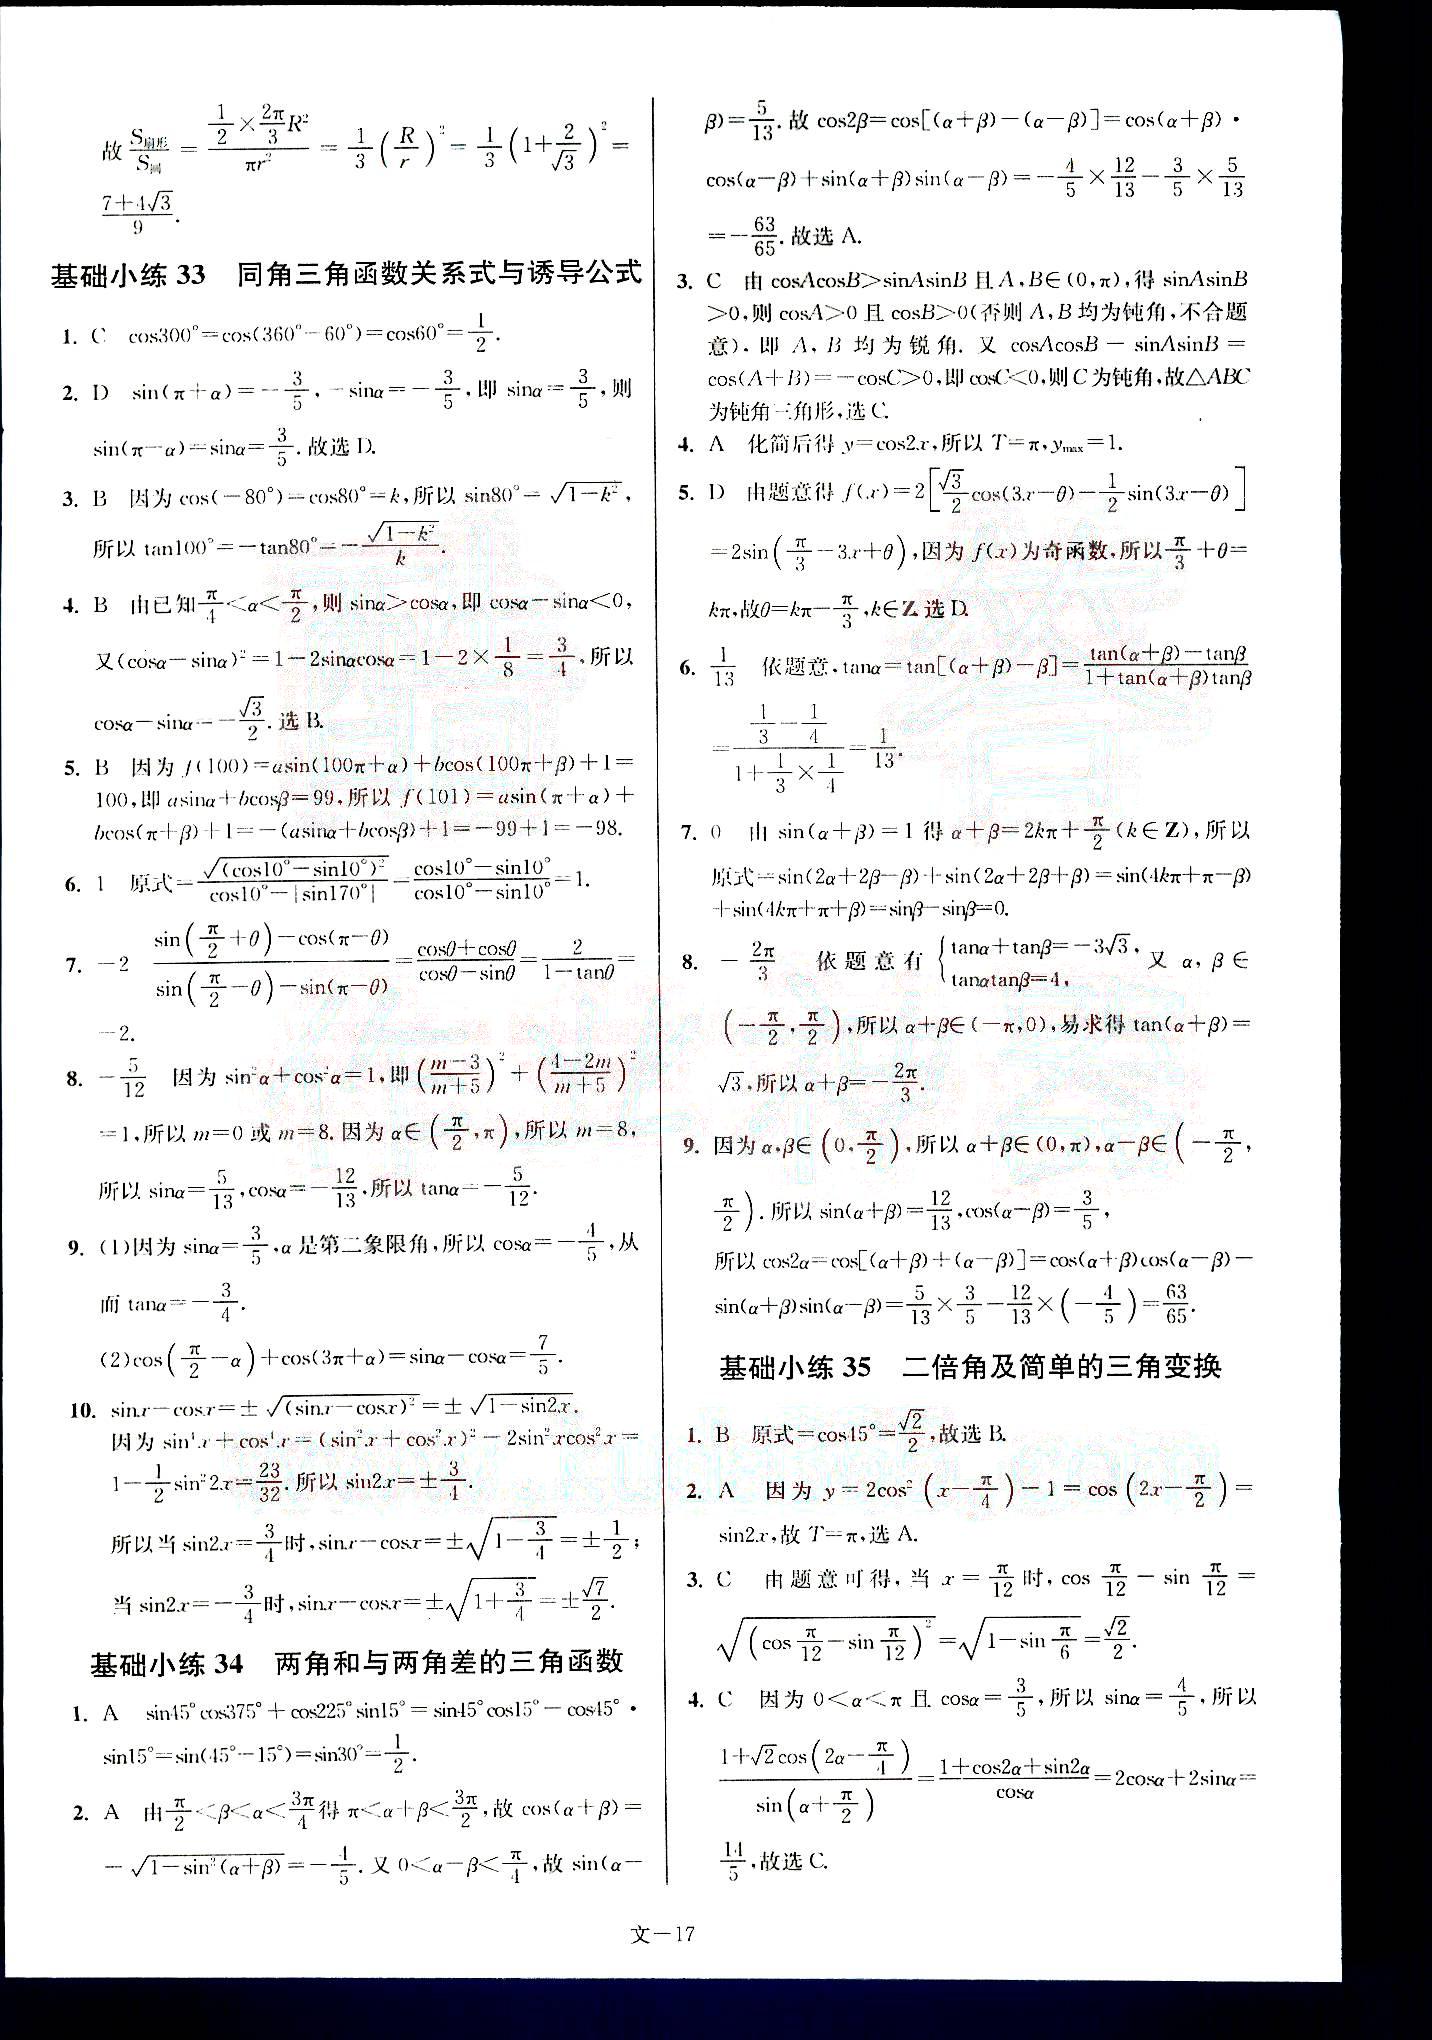 小题狂做-高考数学-文科-最基础篇南京大学出版社 第4部分 [2]